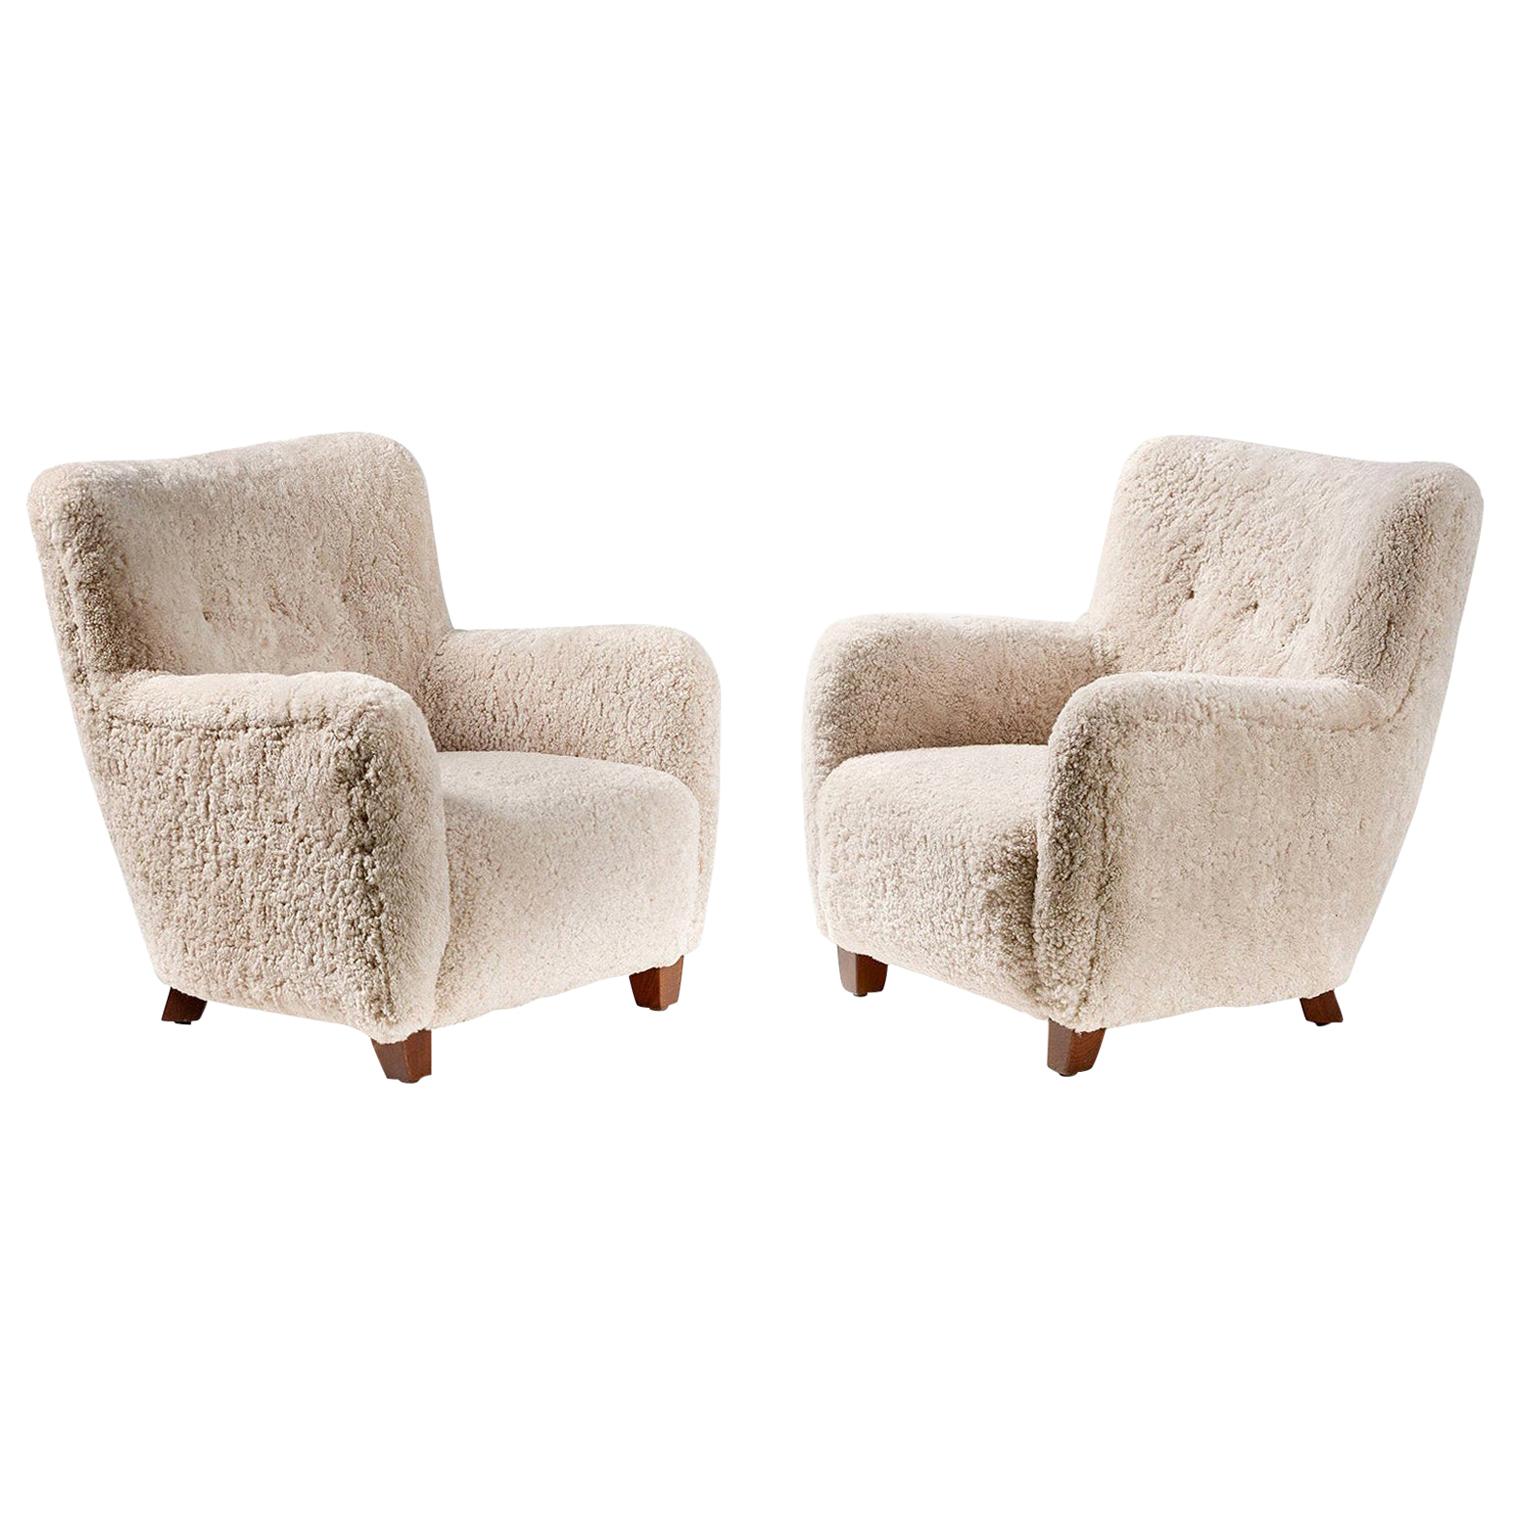 Pair of Custom Made Danish Modern Style Sheepskin Armchairs